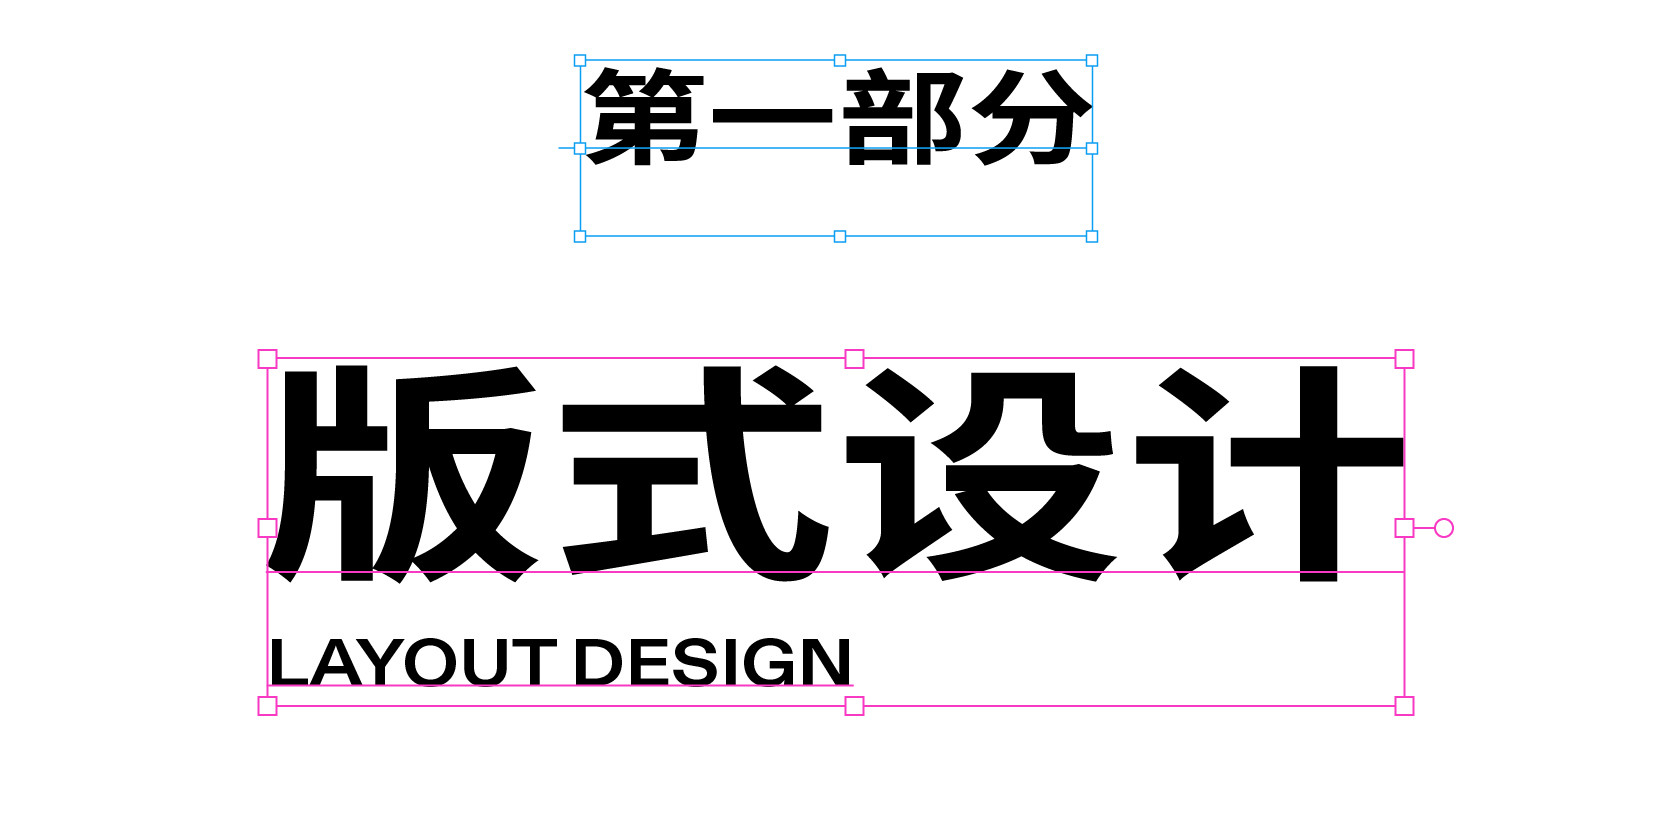 设计师必读书单：版式、字体、色彩，经典设计